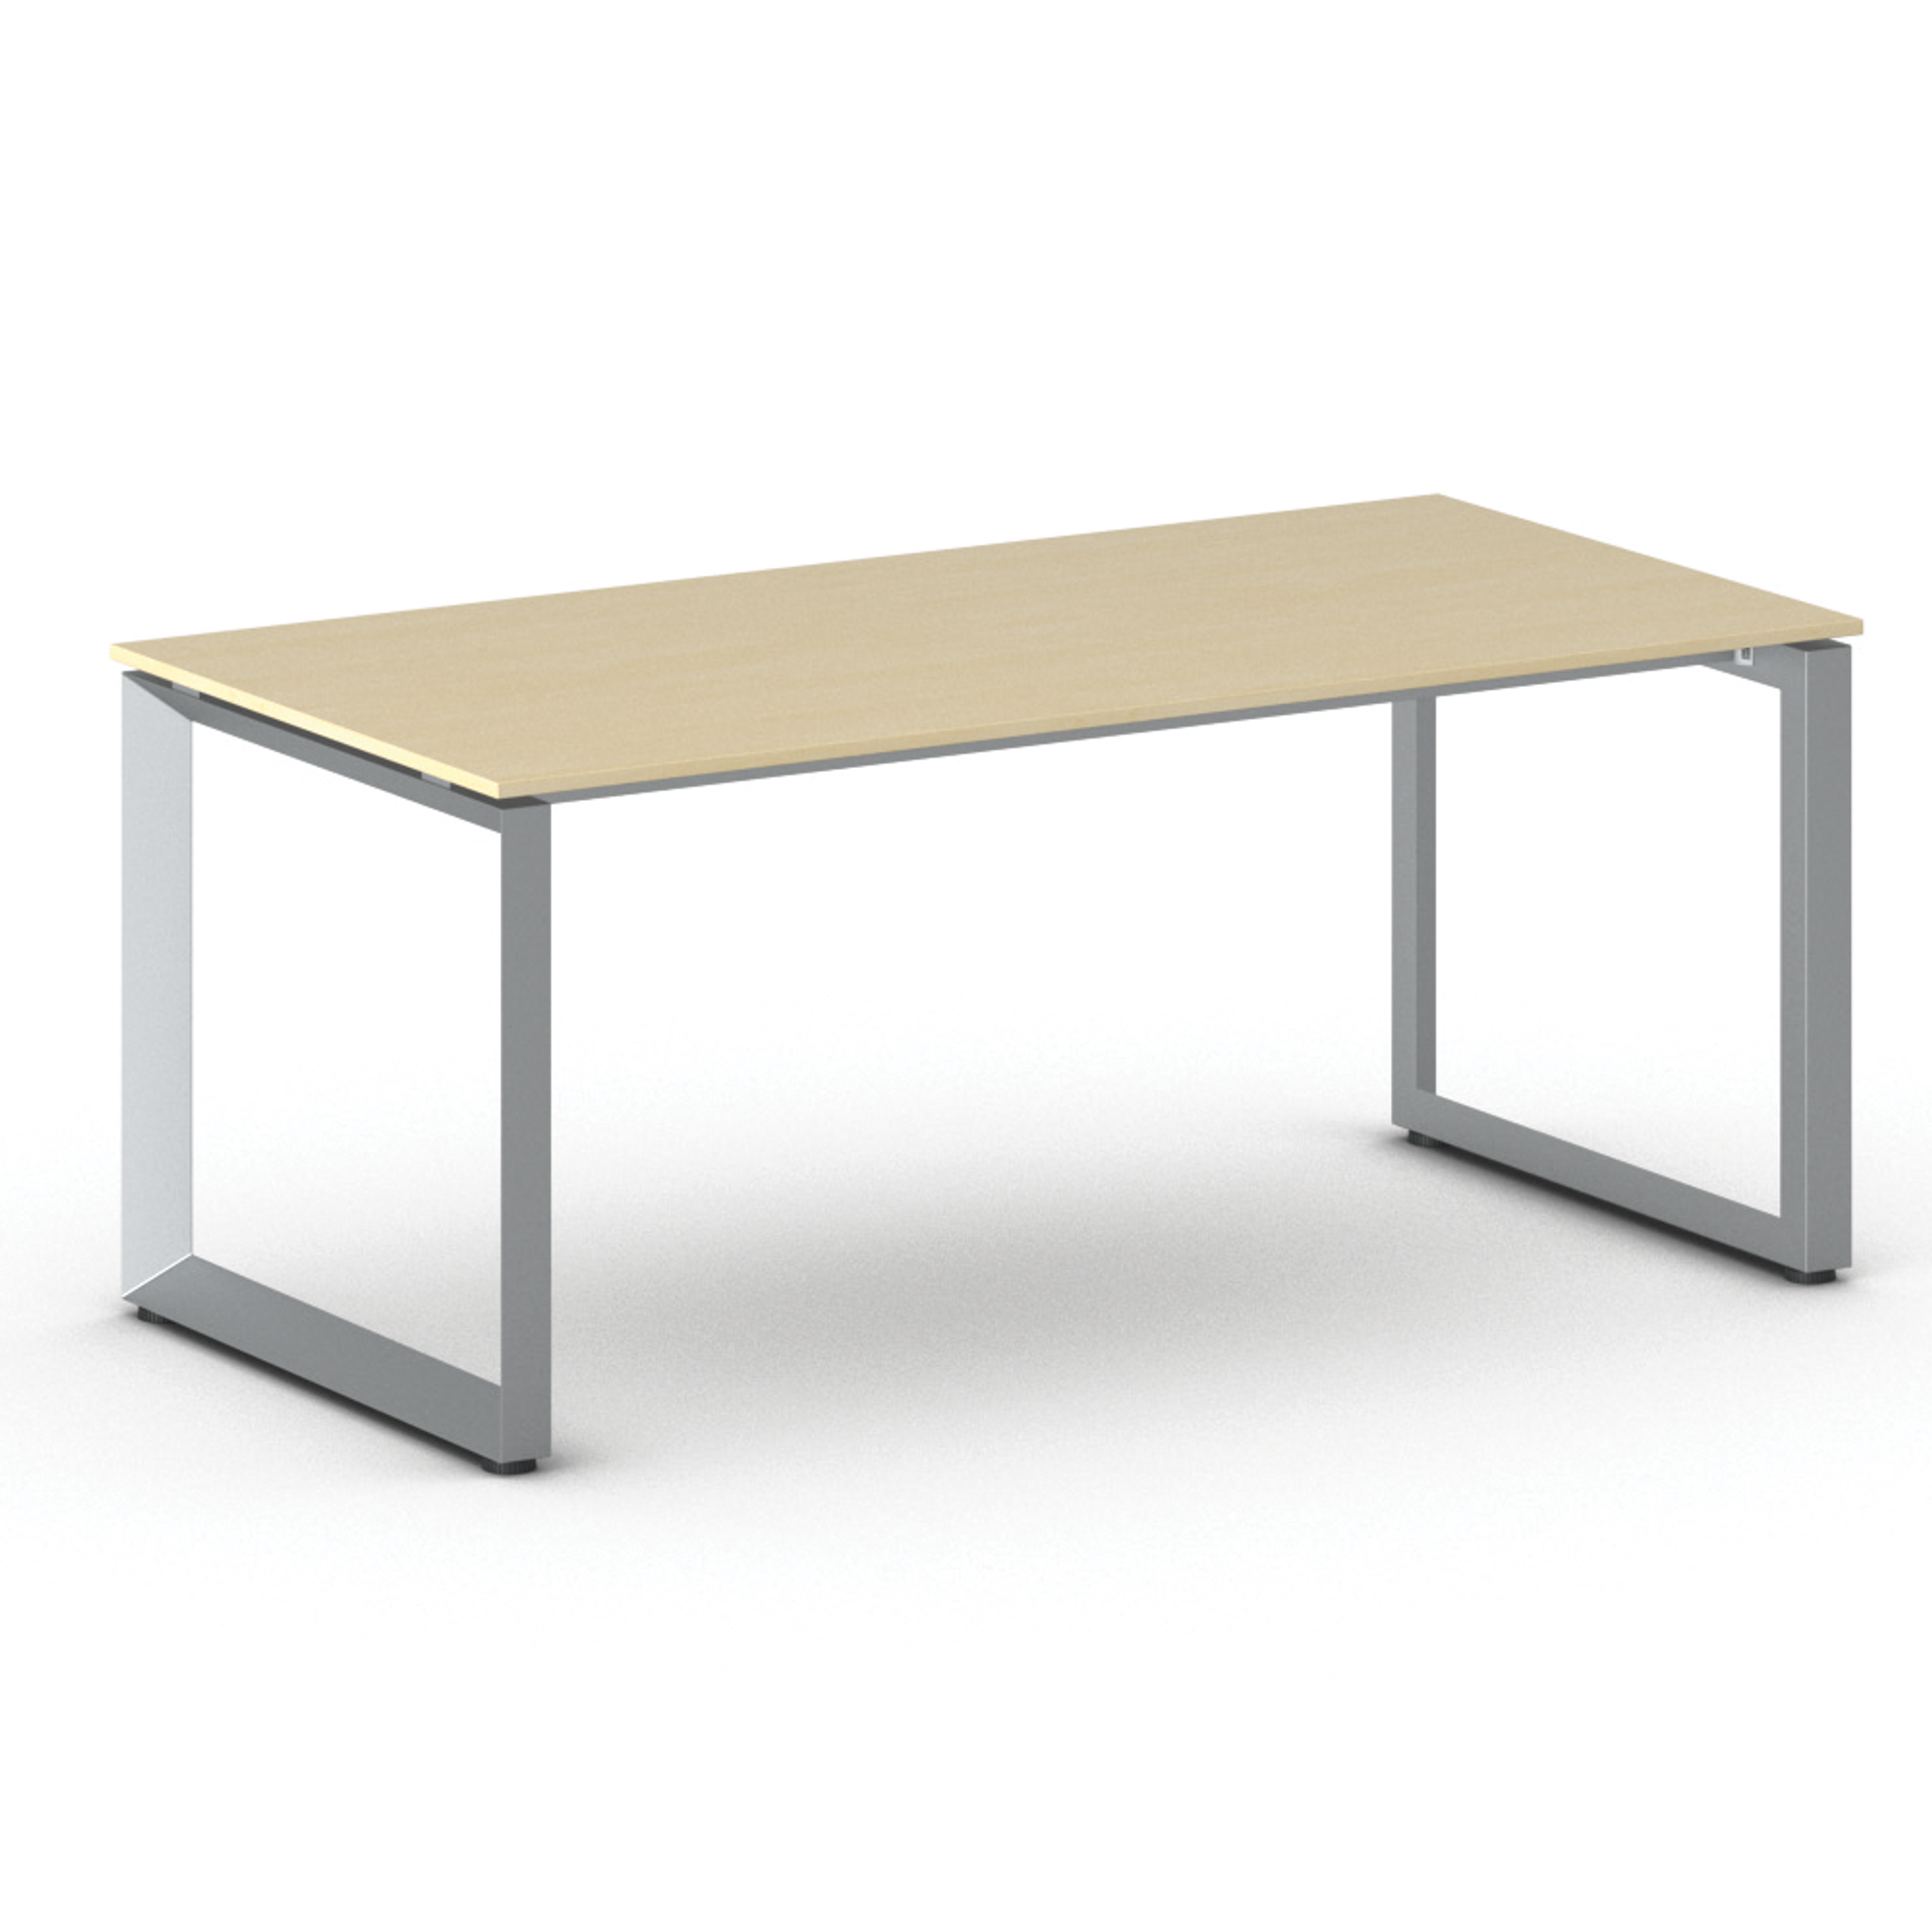 Kancelářský stůl PRIMO INSPIRE, šedostříbrná podnož, 1800 x 900 mm, bříza